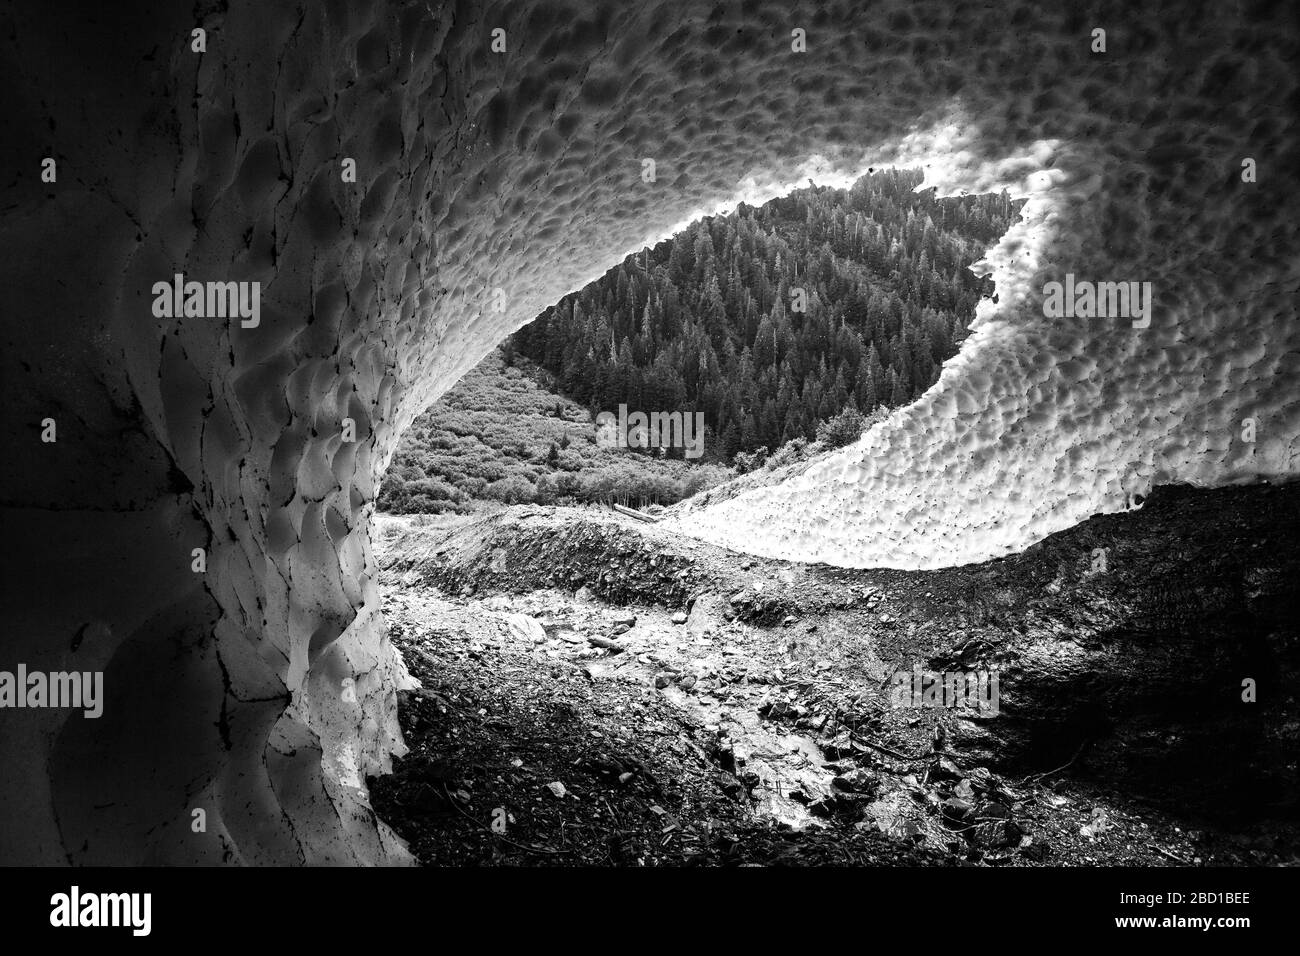 Ein Schwarz-Weiß-Bild von natürlichen Schnee Höhle von einem Bach an der Seite eines Berges geschnitzt, mit einem immergrünen Wald durch die Öffnung sichtbar. Stockfoto